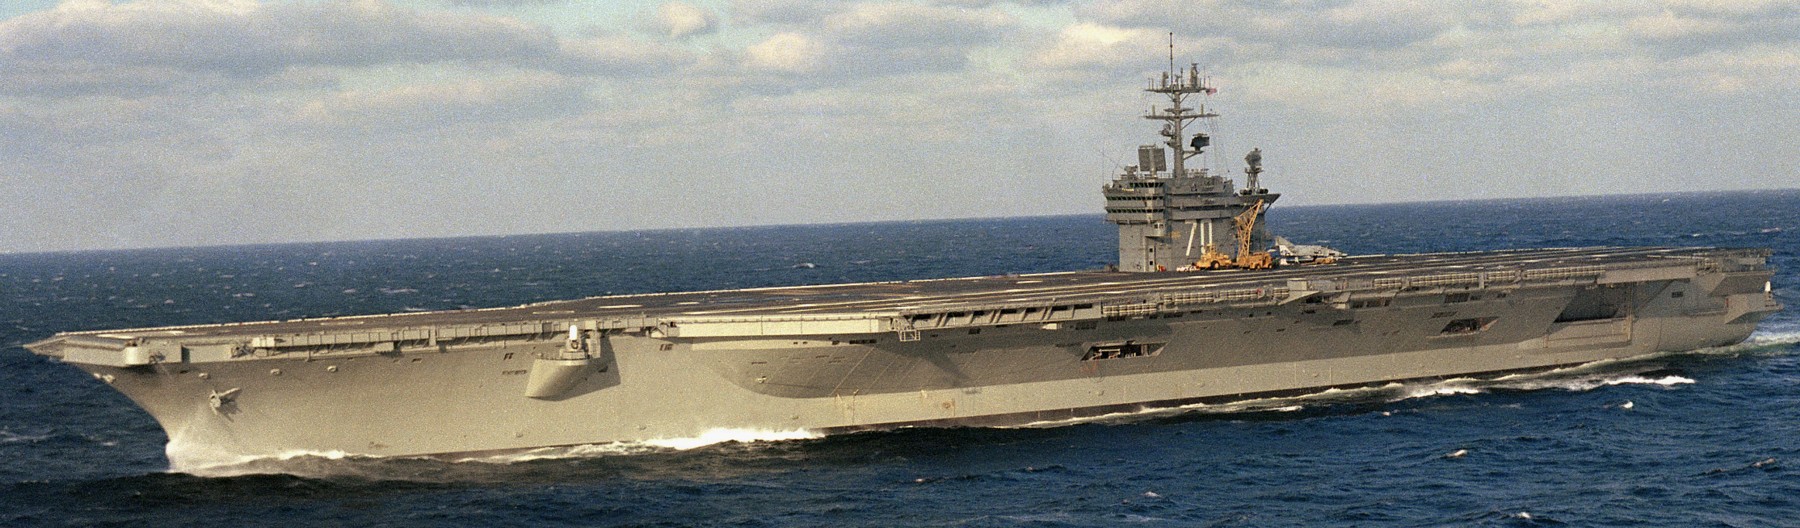 cvn-70 uss carl vinson nimitz class aircraft carrier us navy 13